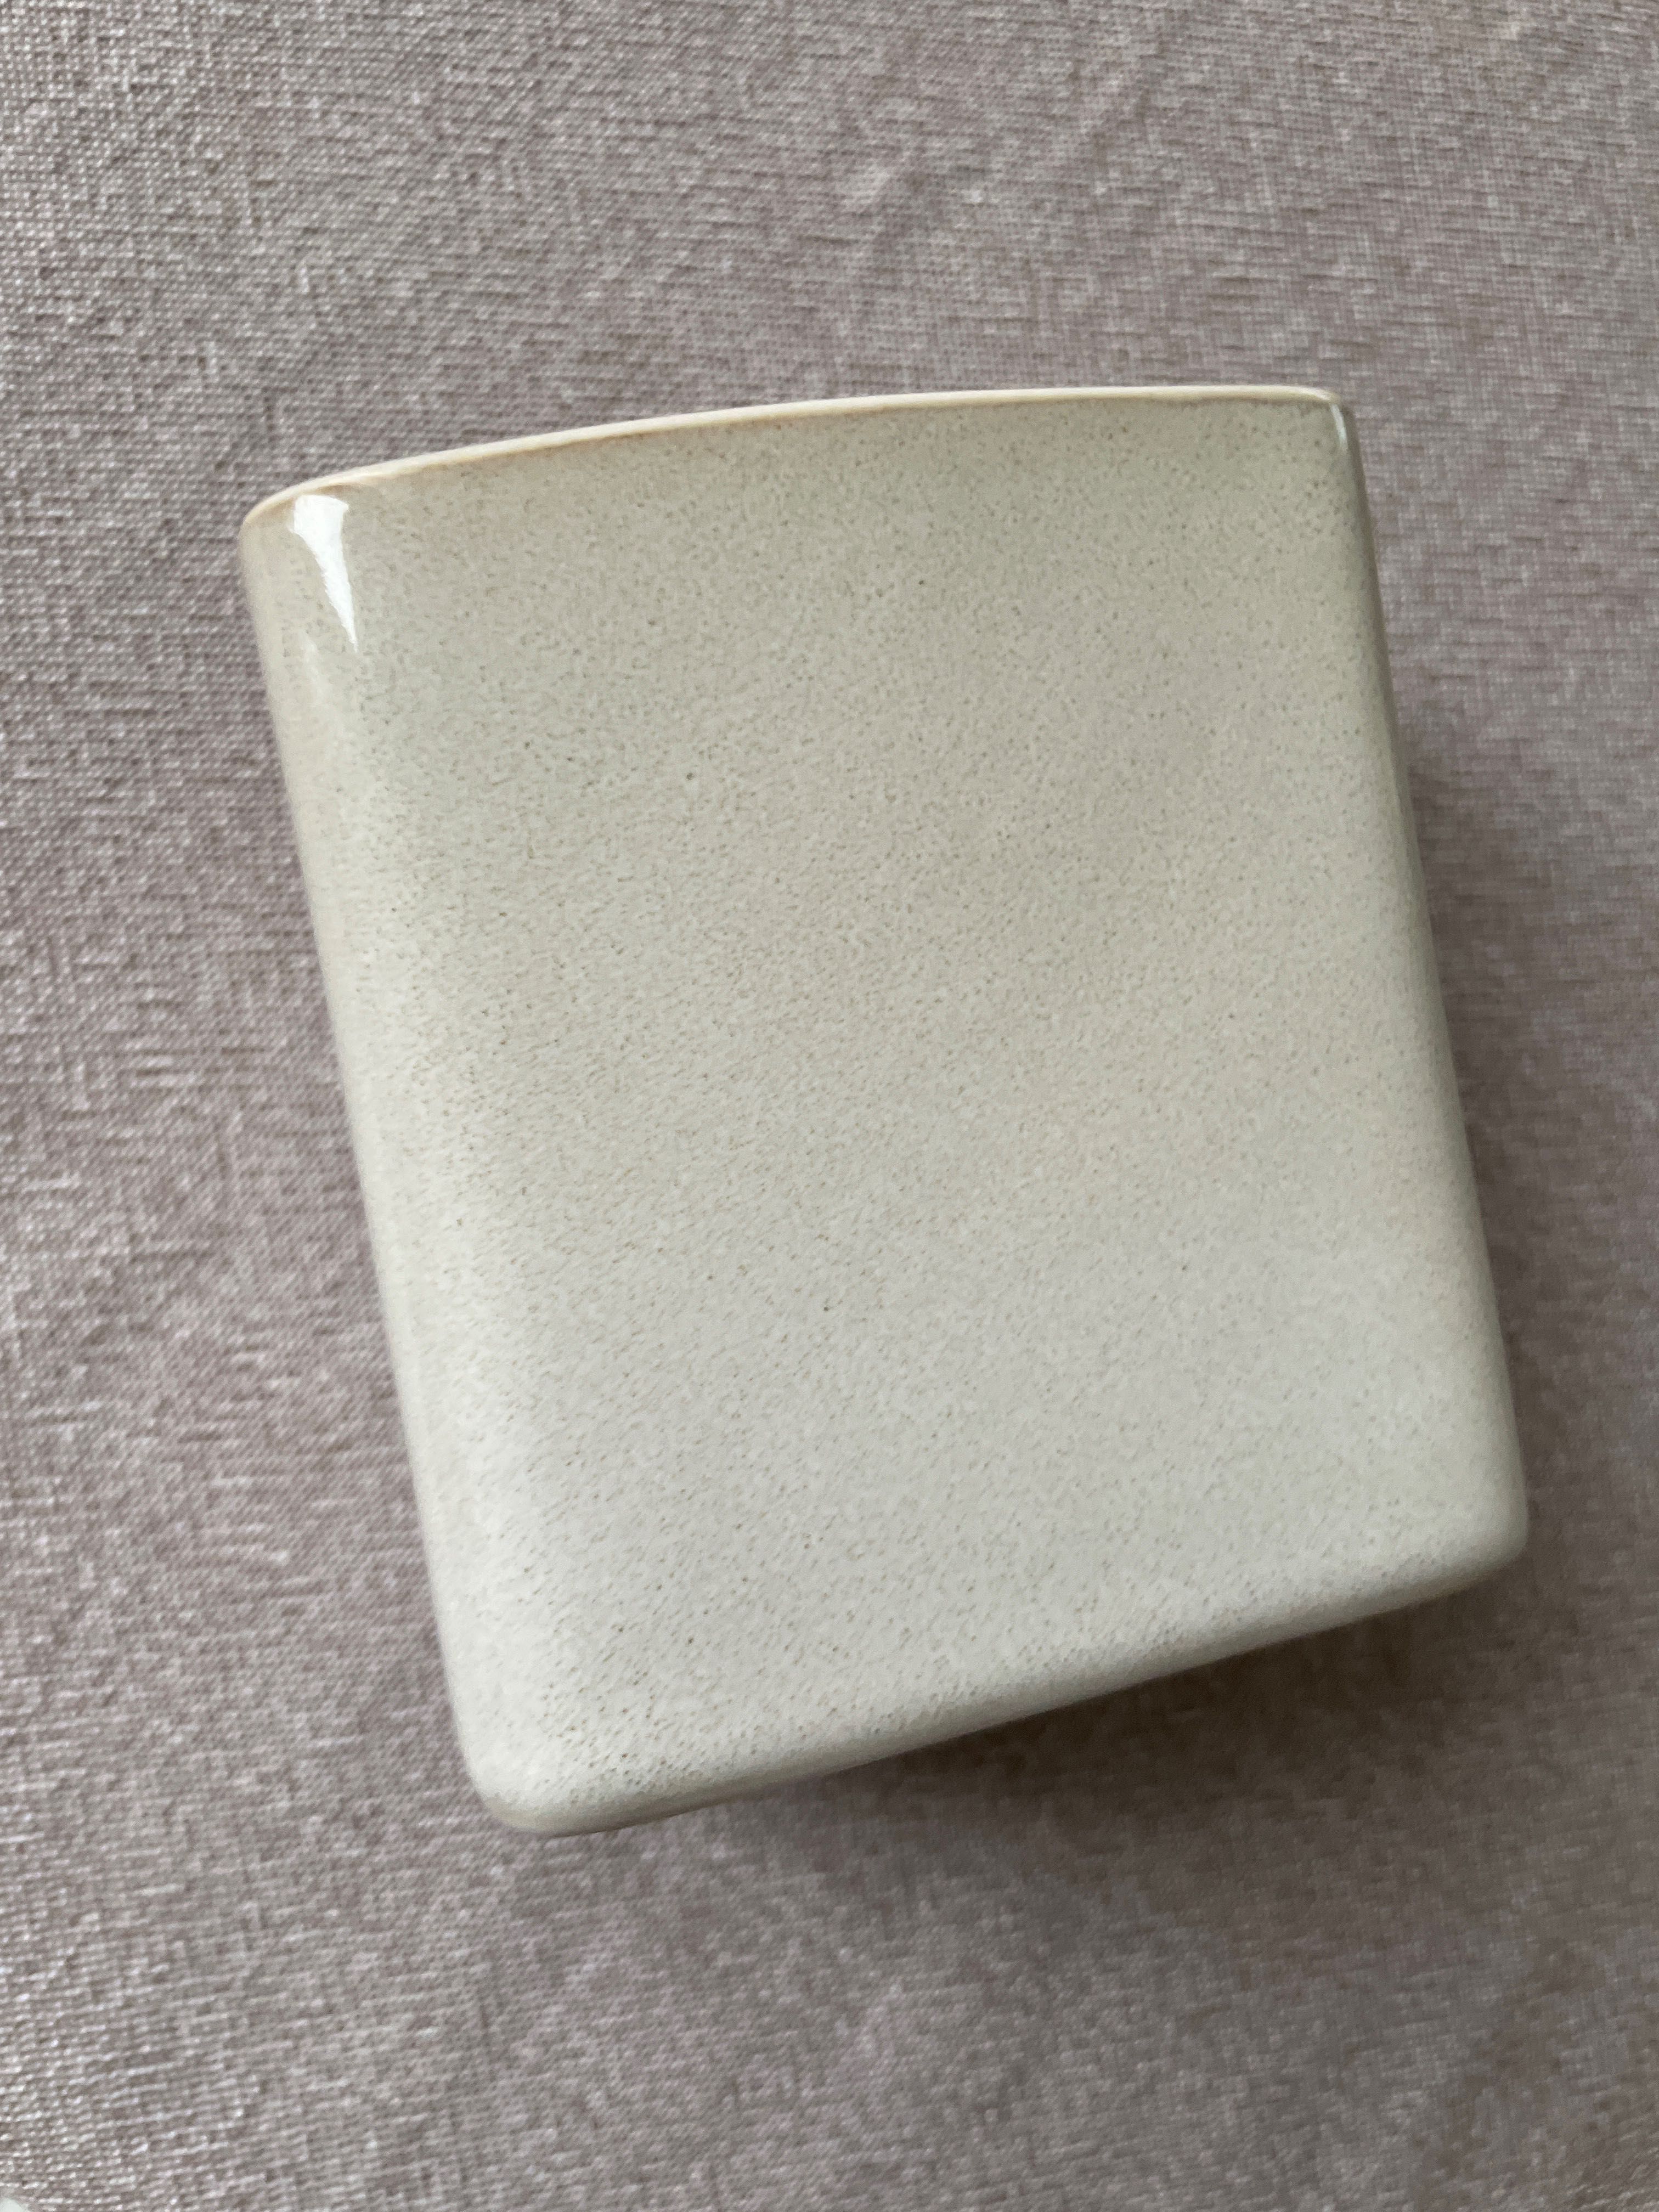 H&M Home Nowy ceramiczny pojemnik kubek na szczoteczki piaskowy